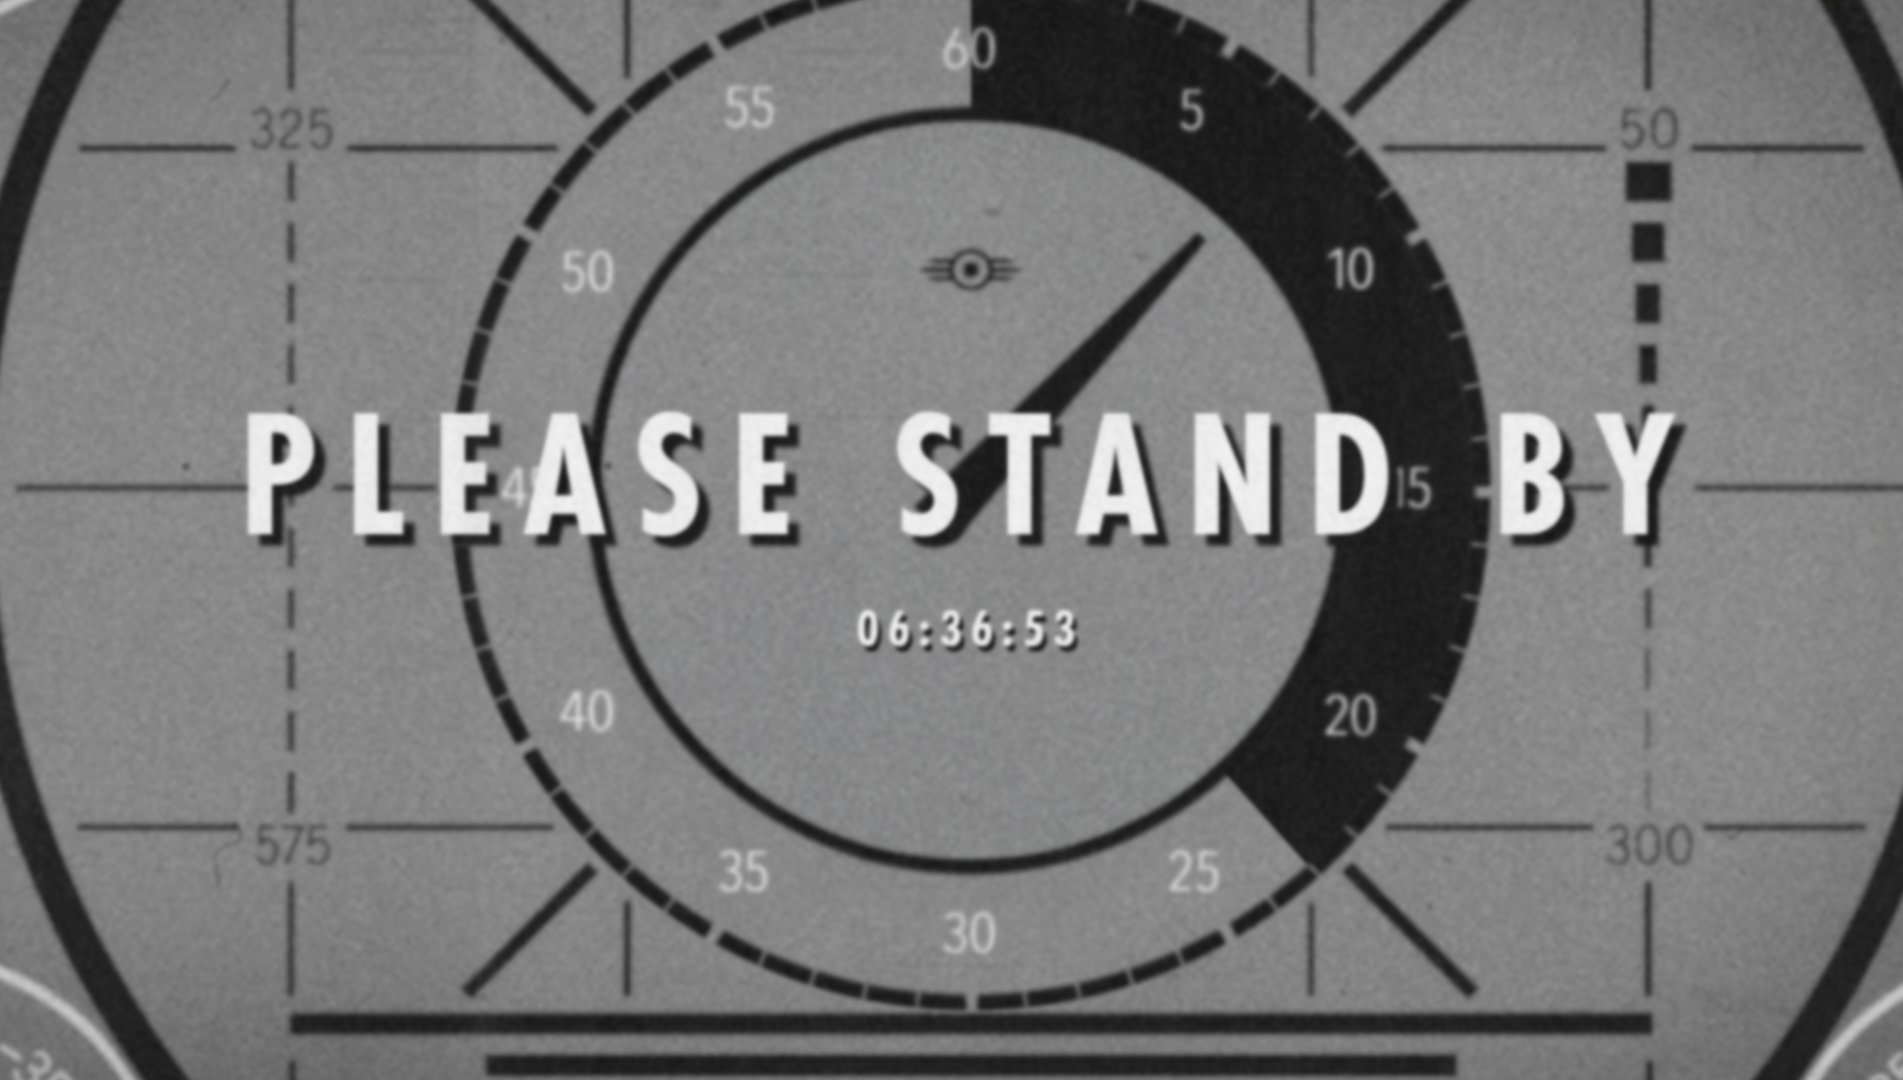 Der Countdown dürfte der Präsentation von Fallout 4 gelten